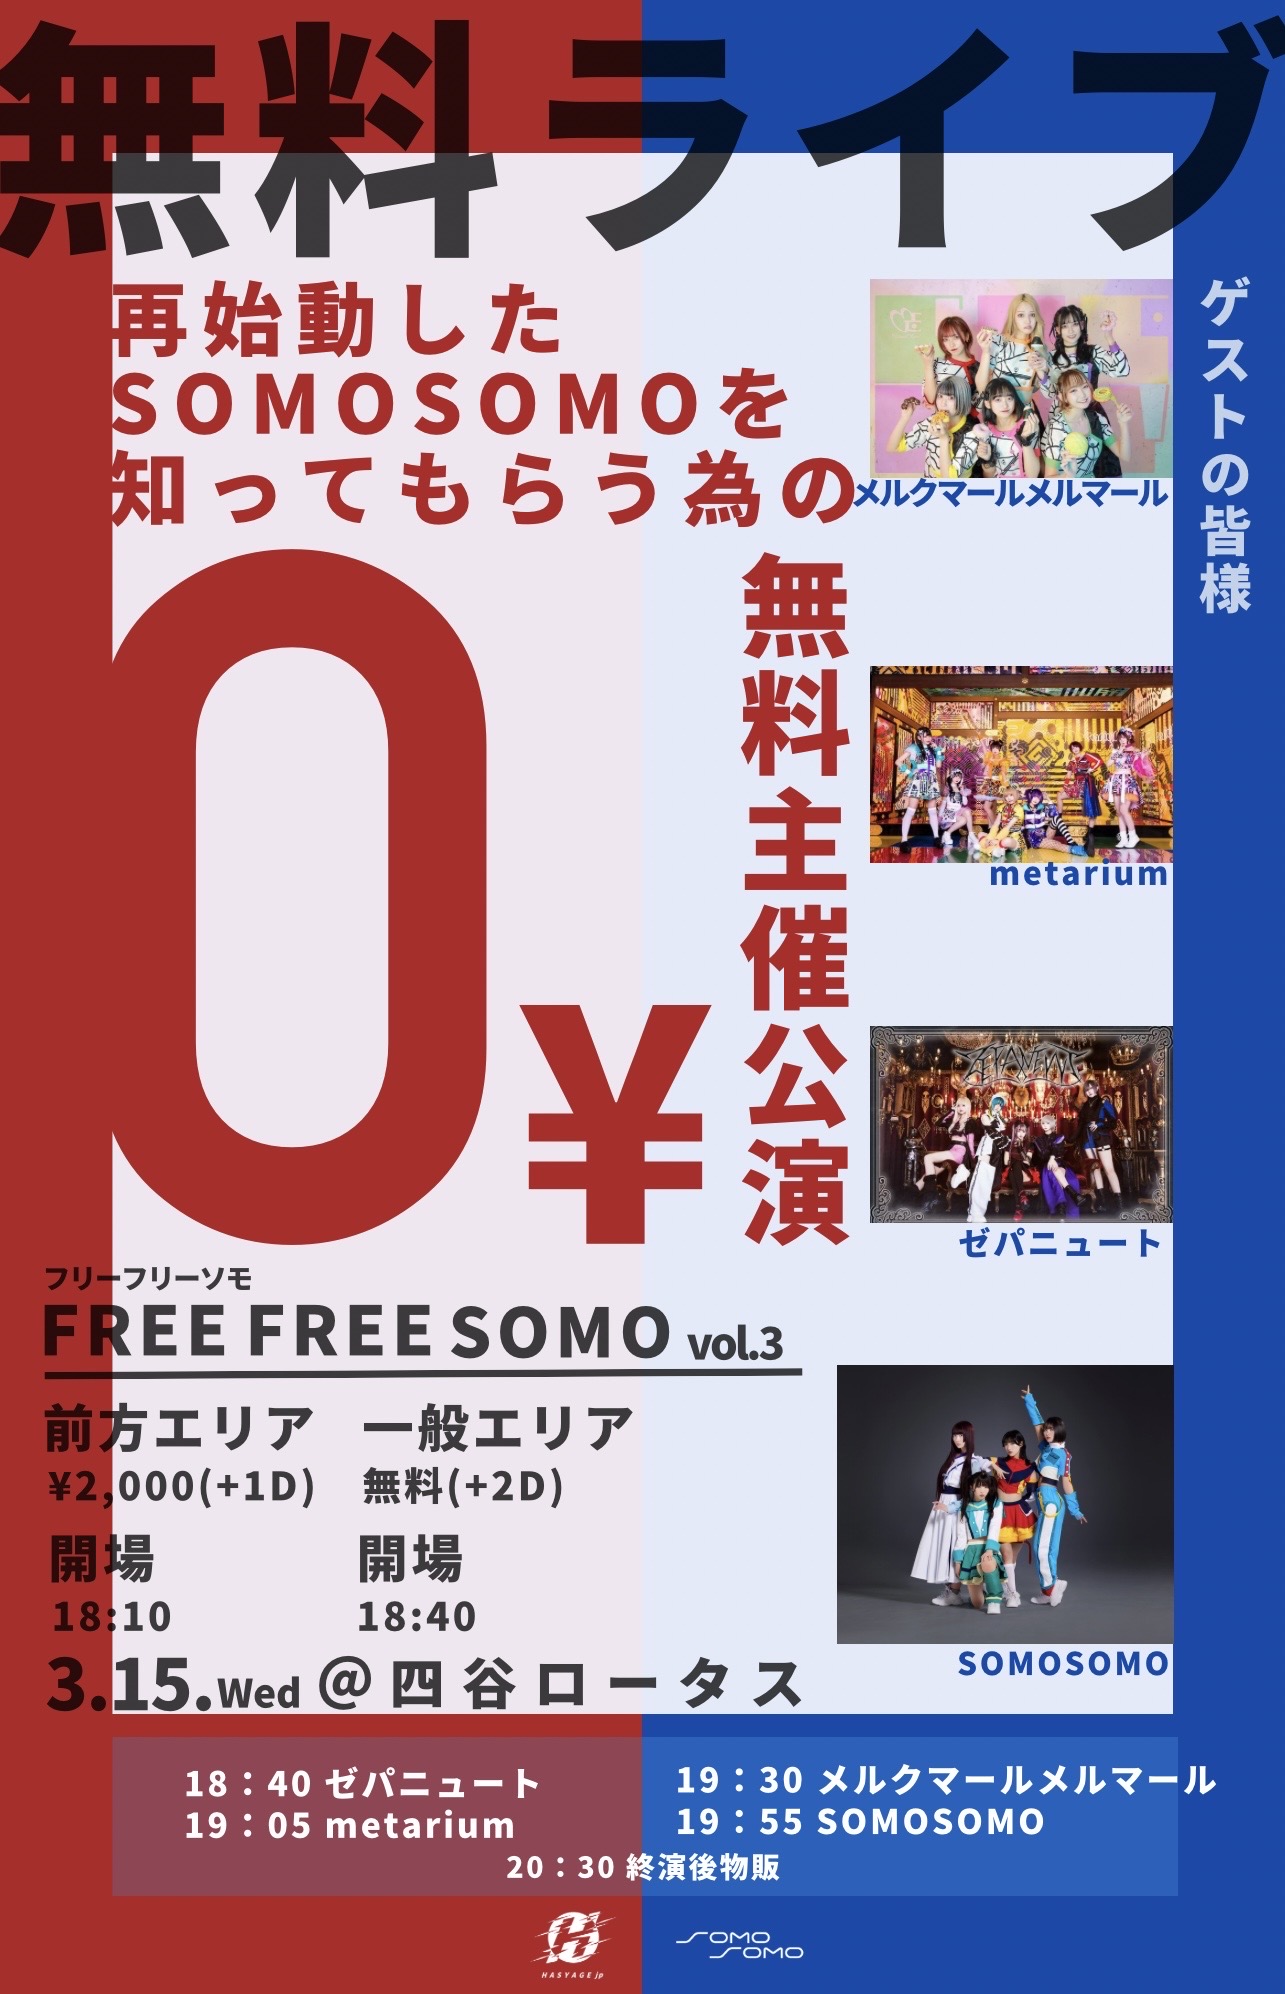 FREE FREE SOMO vol.3